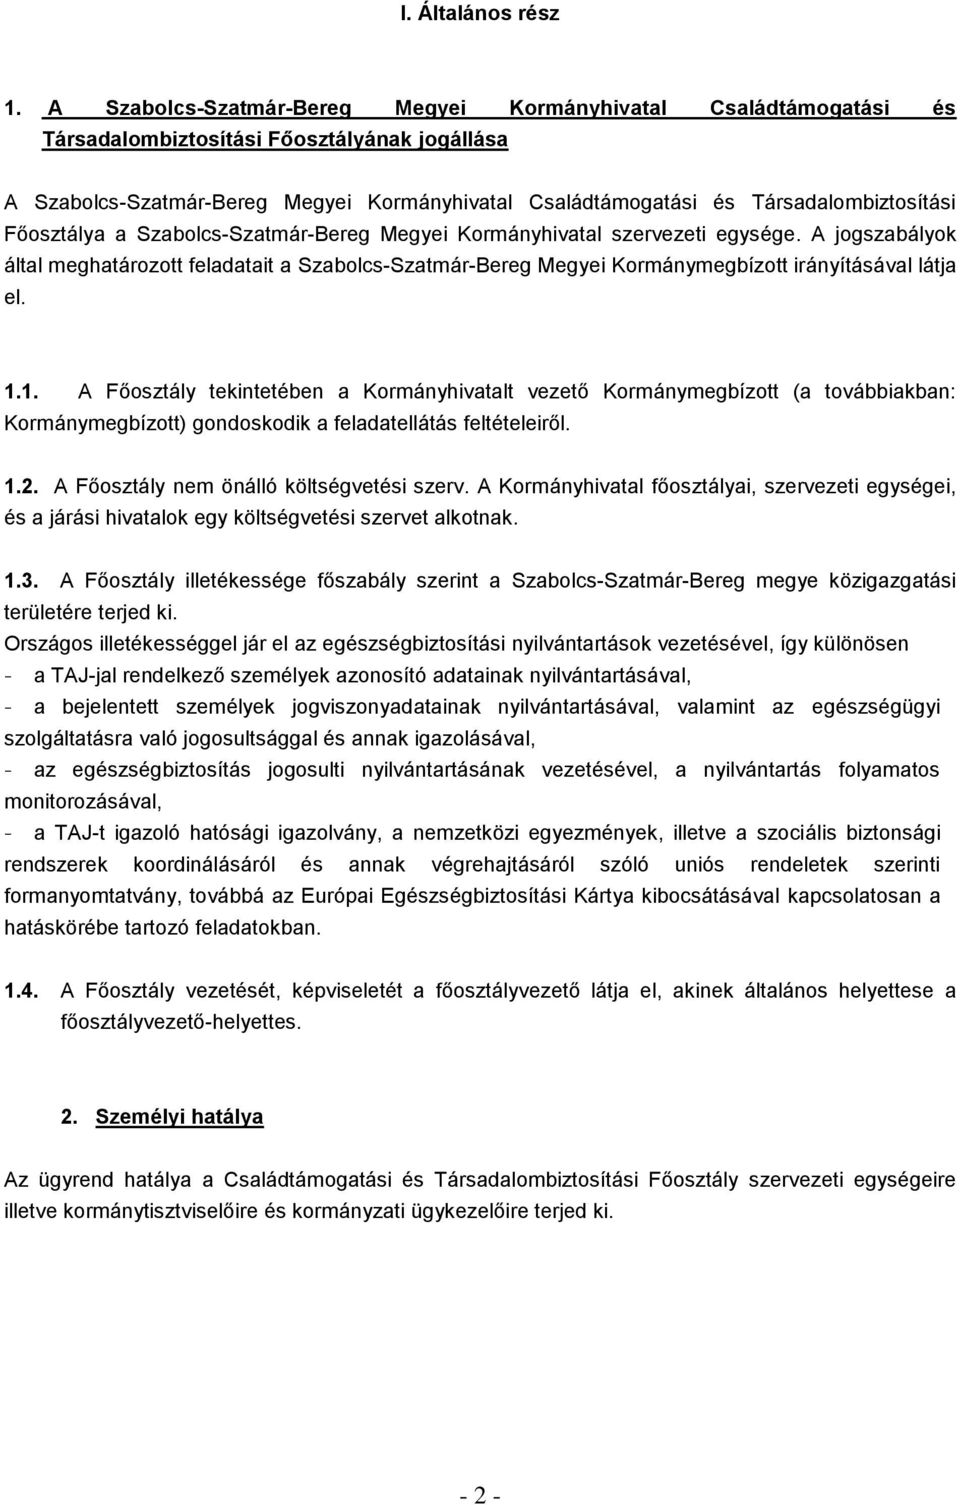 Társadalombiztosítási Főosztálya a Szabolcs-Szatmár-Bereg Megyei Kormányhivatal szervezeti egysége.